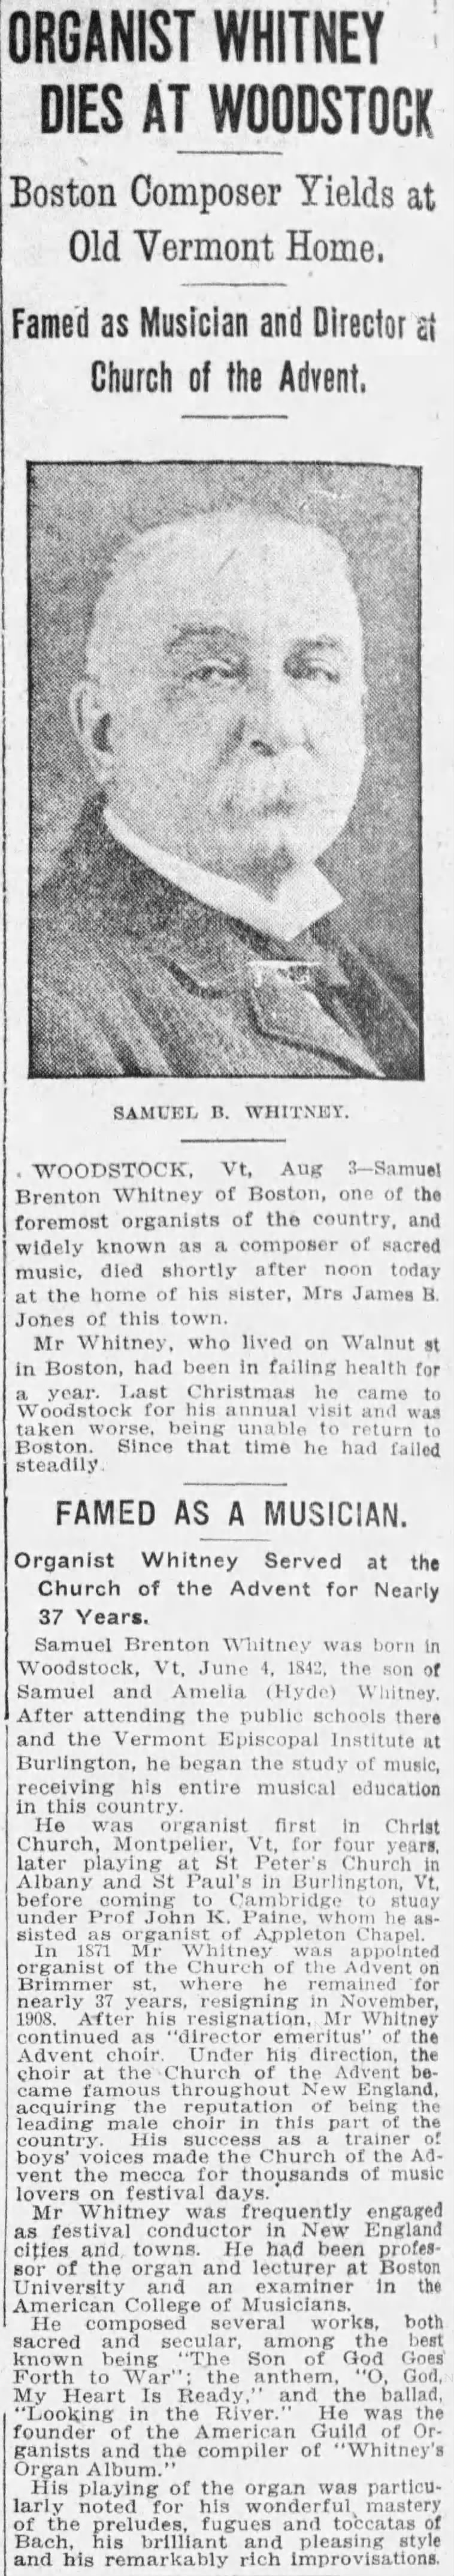 Organist Whitney Dies at Woodstock